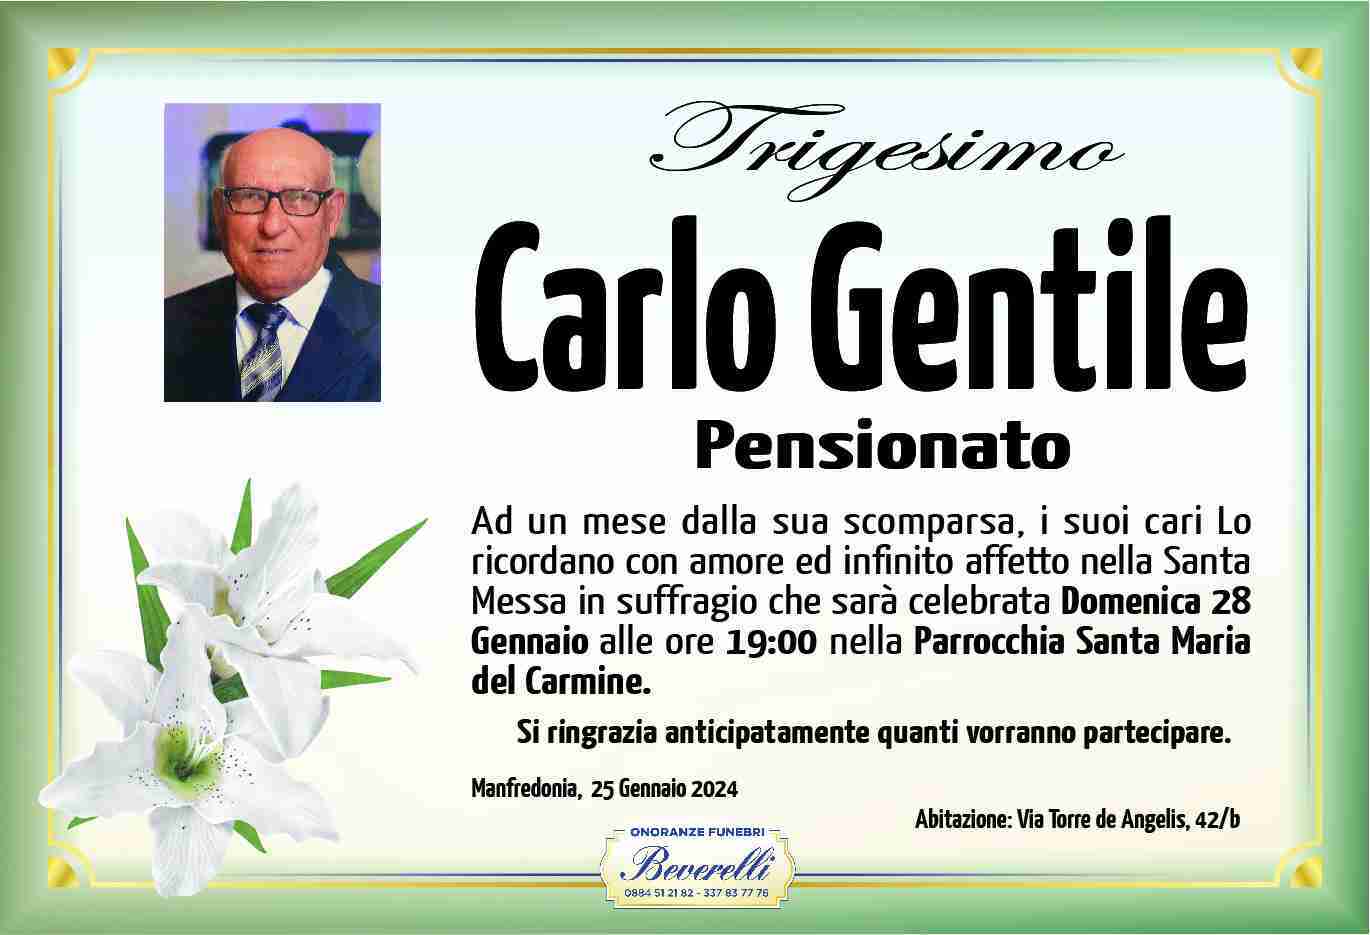 Carlo Gentile